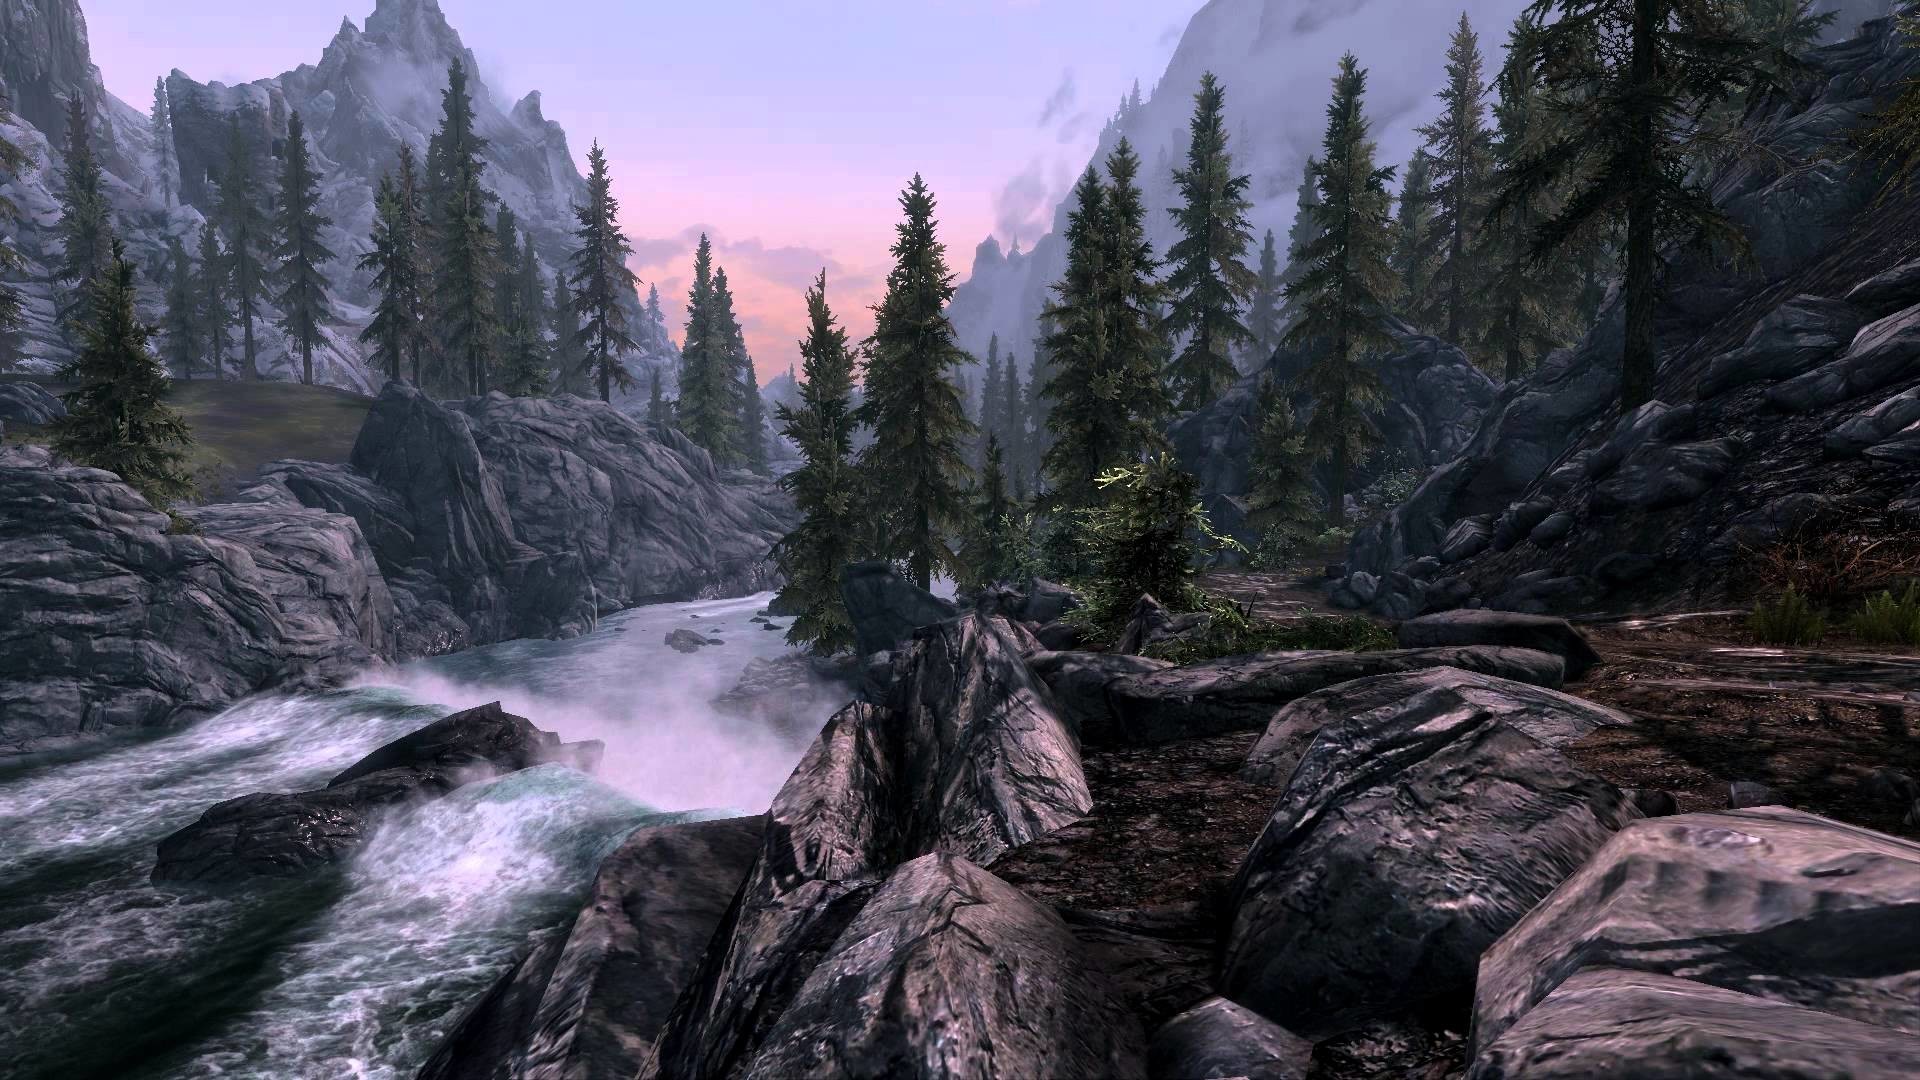 1920x1080 Skyrim - DreamScene [Live Wallpaper] - River Scene 2 (1080p)